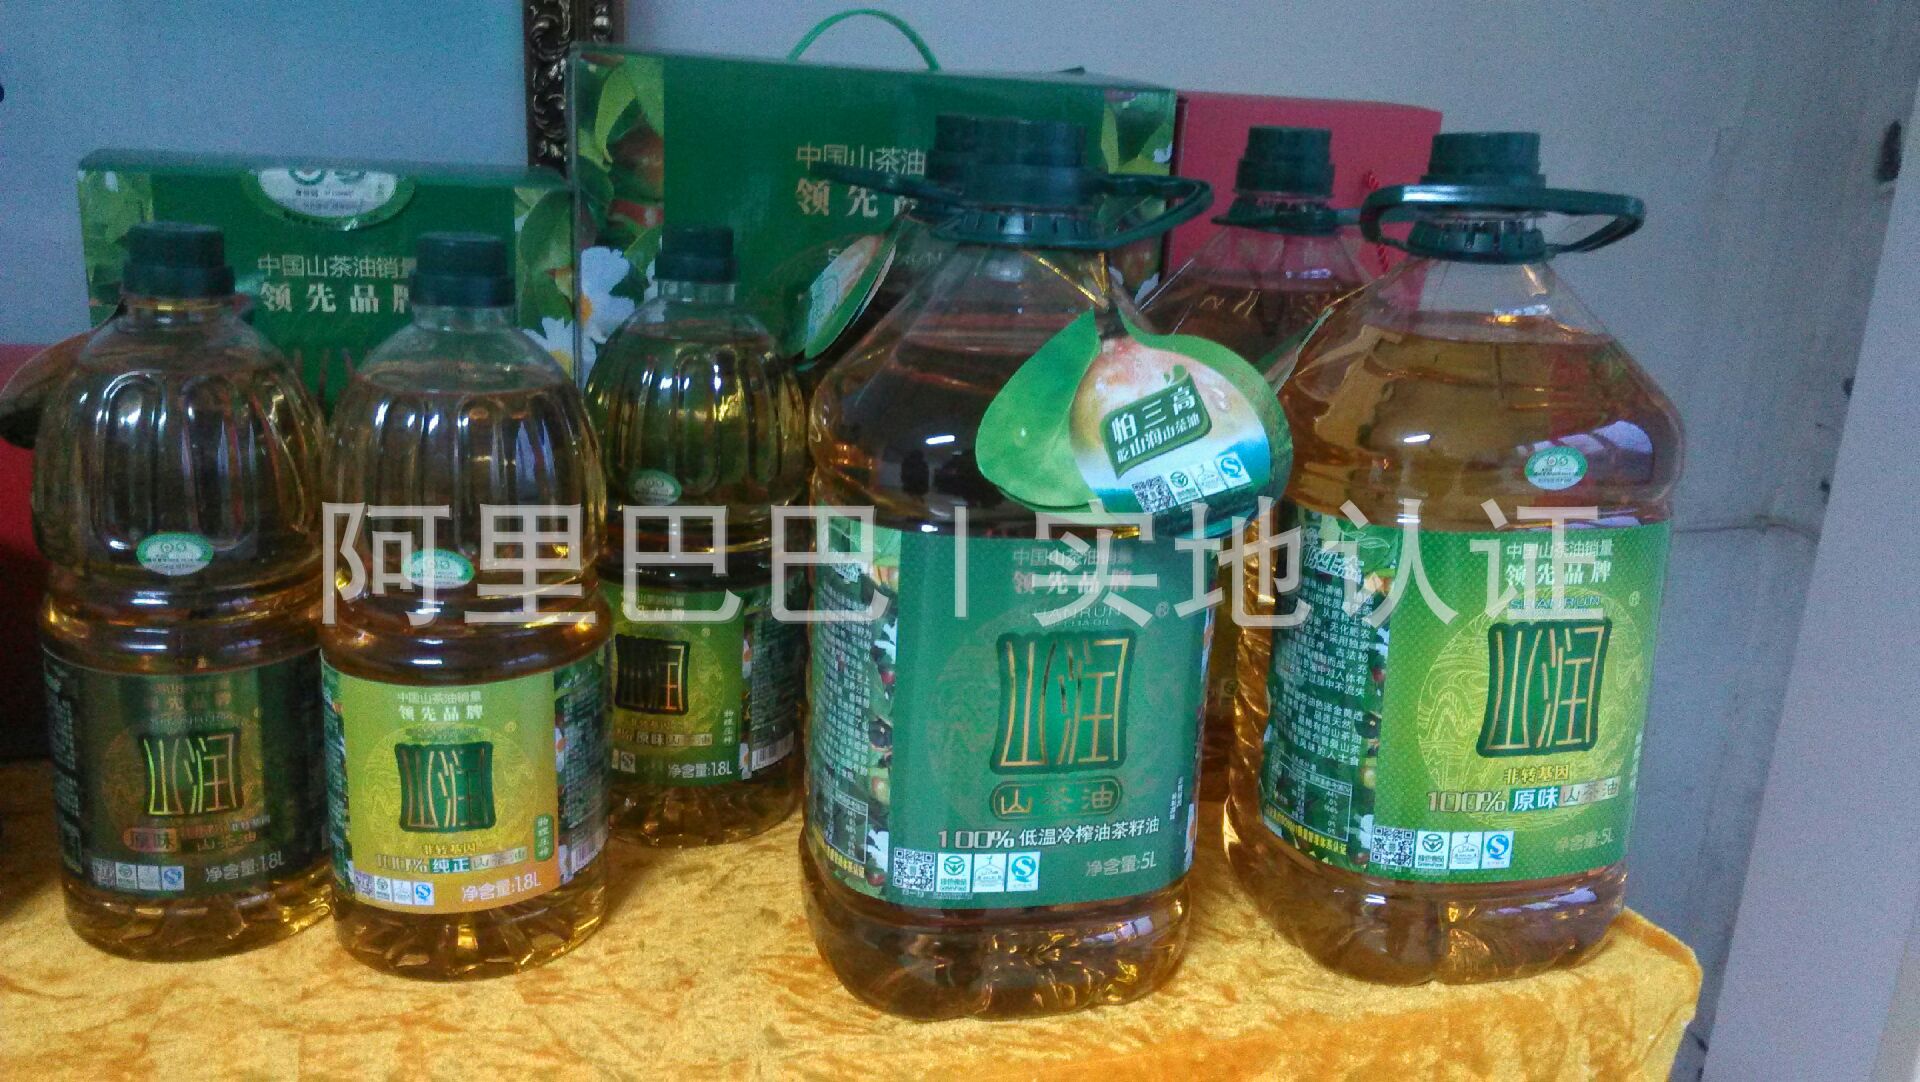 湖南山润油茶科技发展有限公司